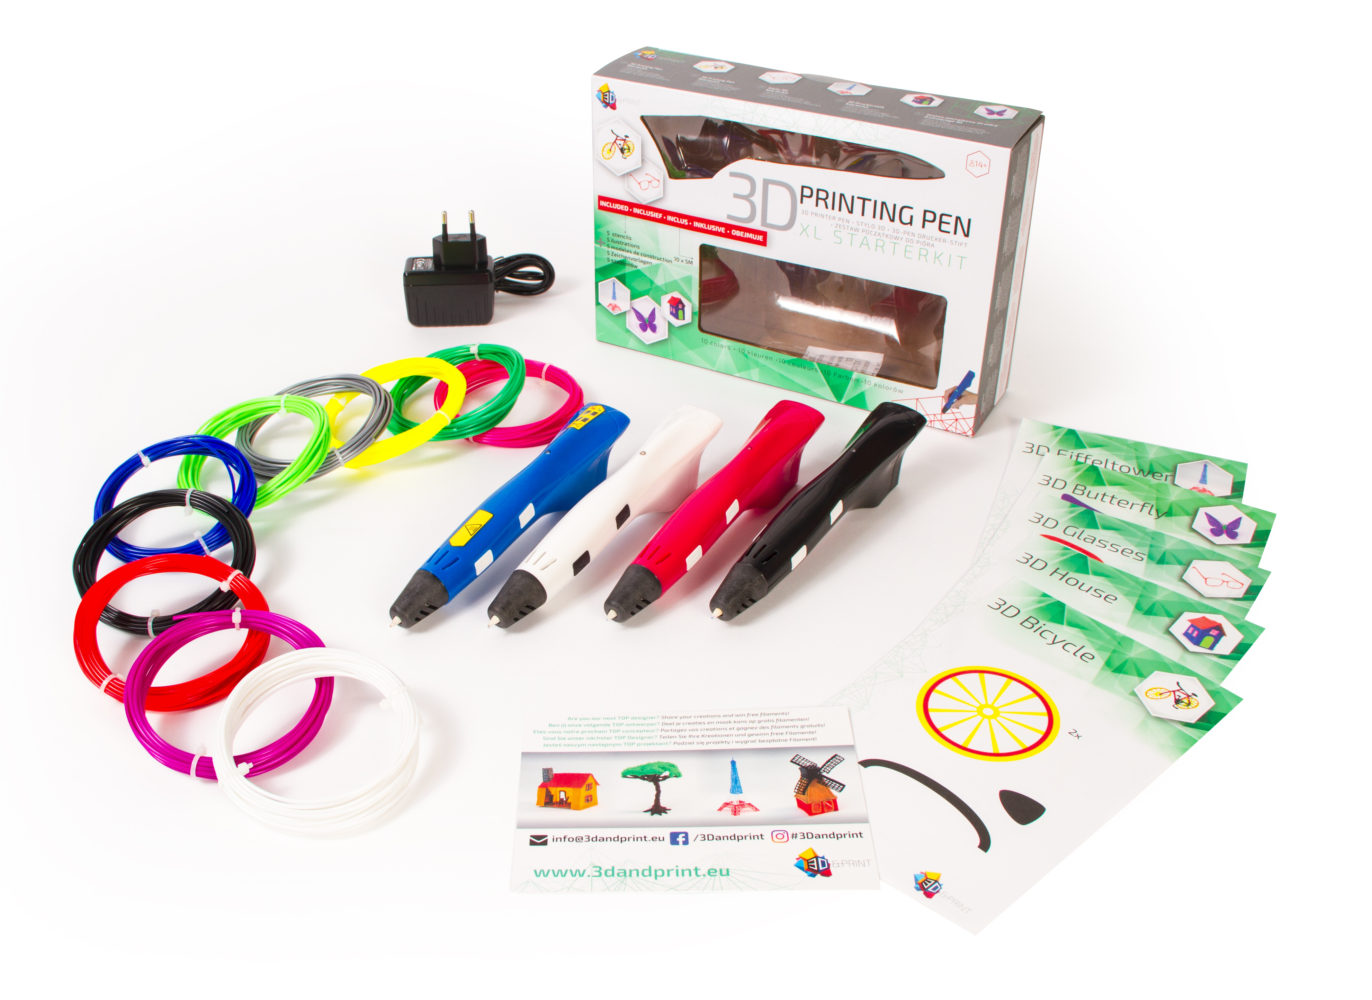 3D pen XL starter kit